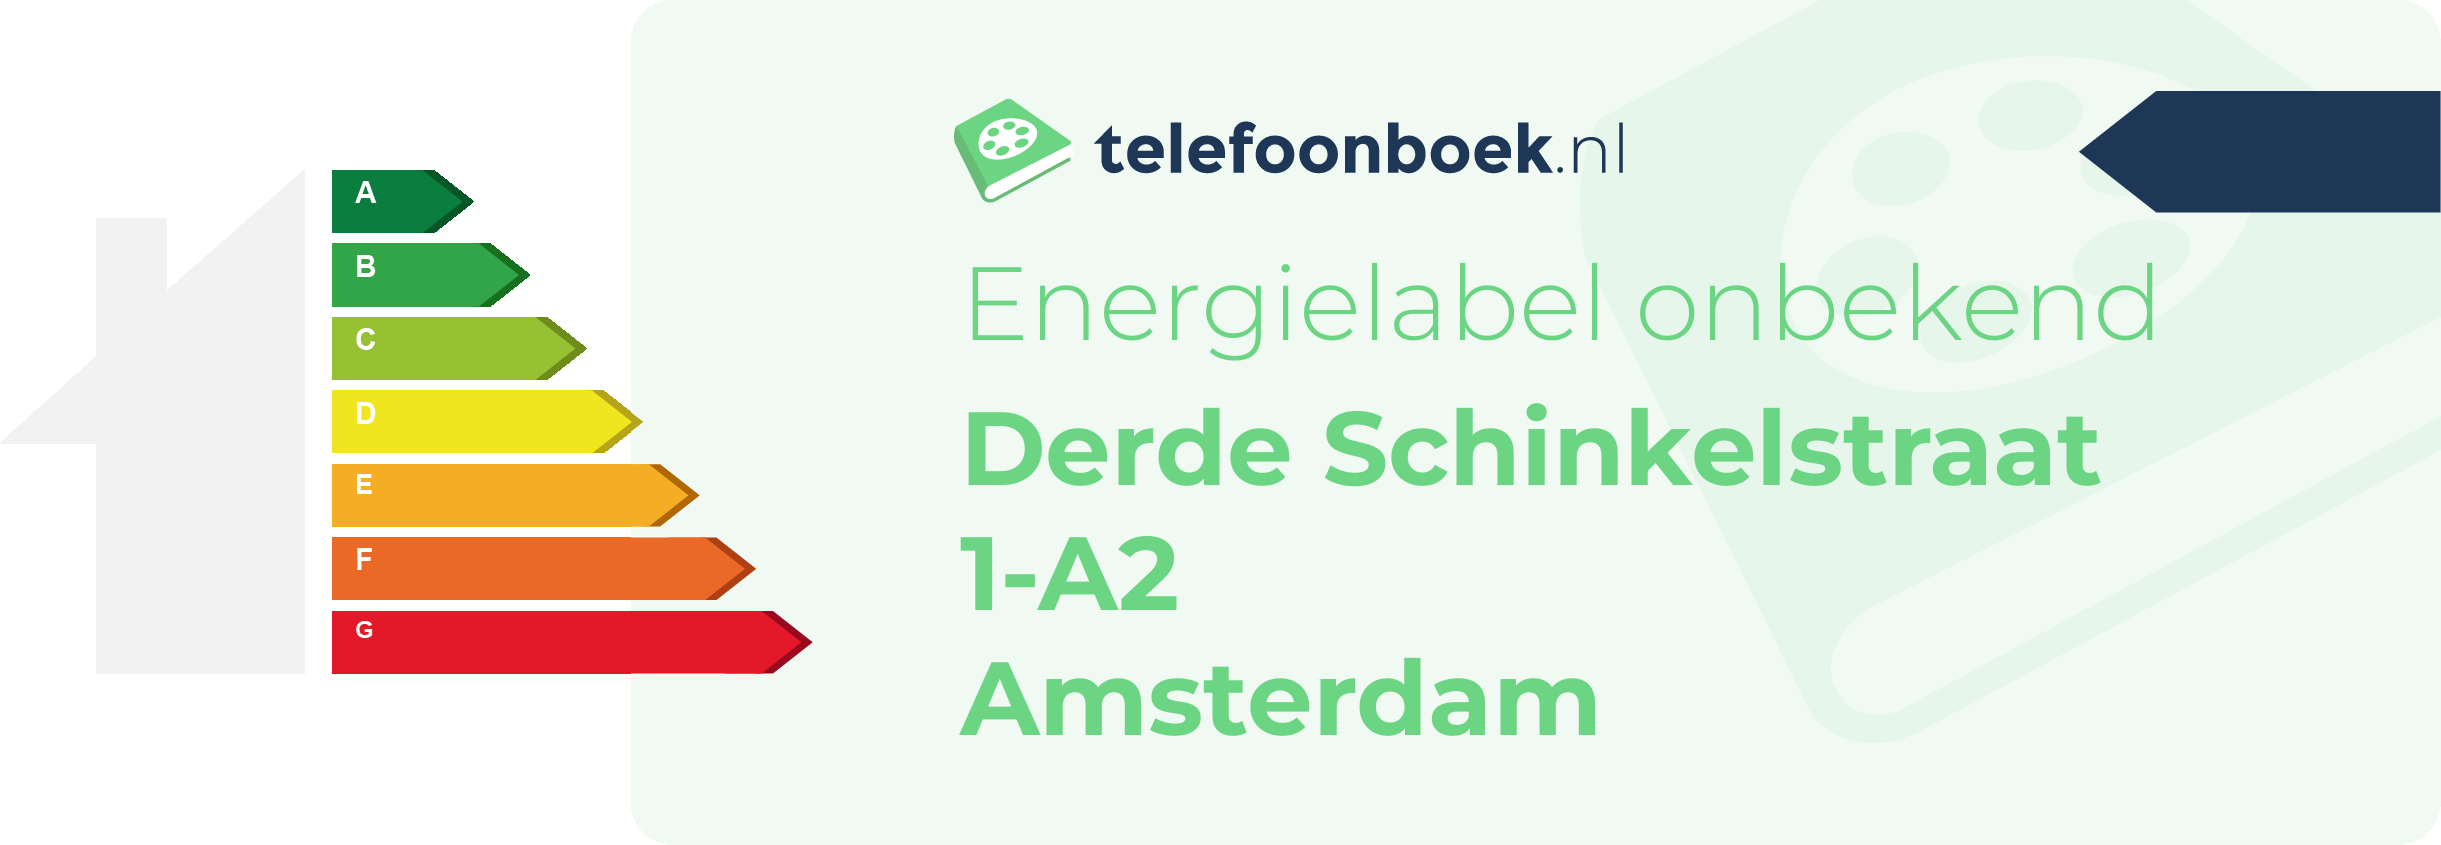 Energielabel Derde Schinkelstraat 1-A2 Amsterdam